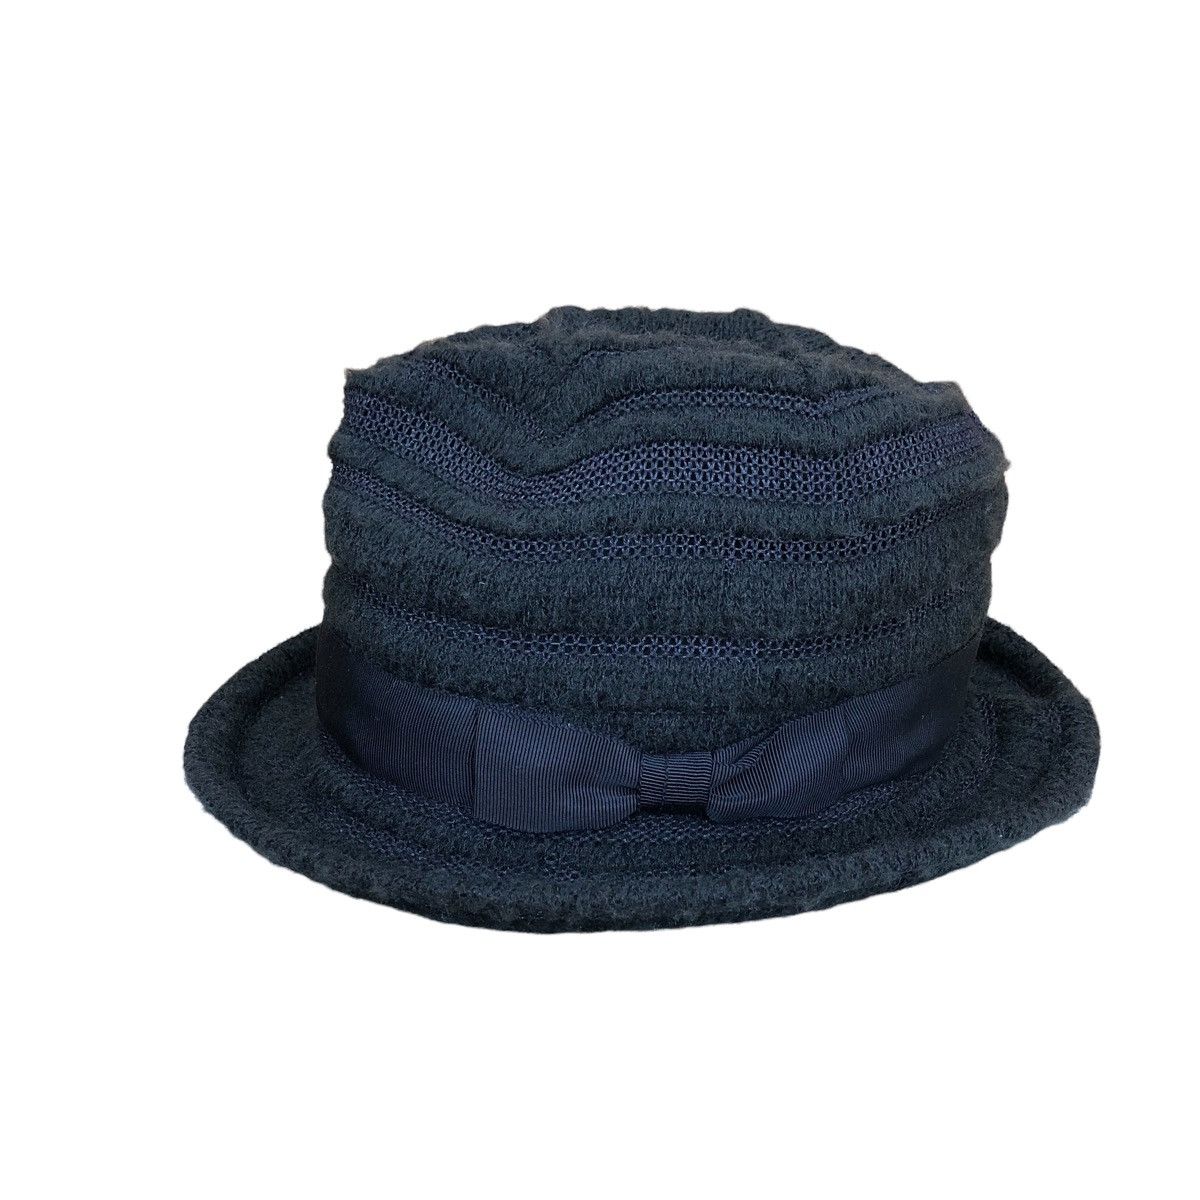 Ca4la - Bucket Hats - 1